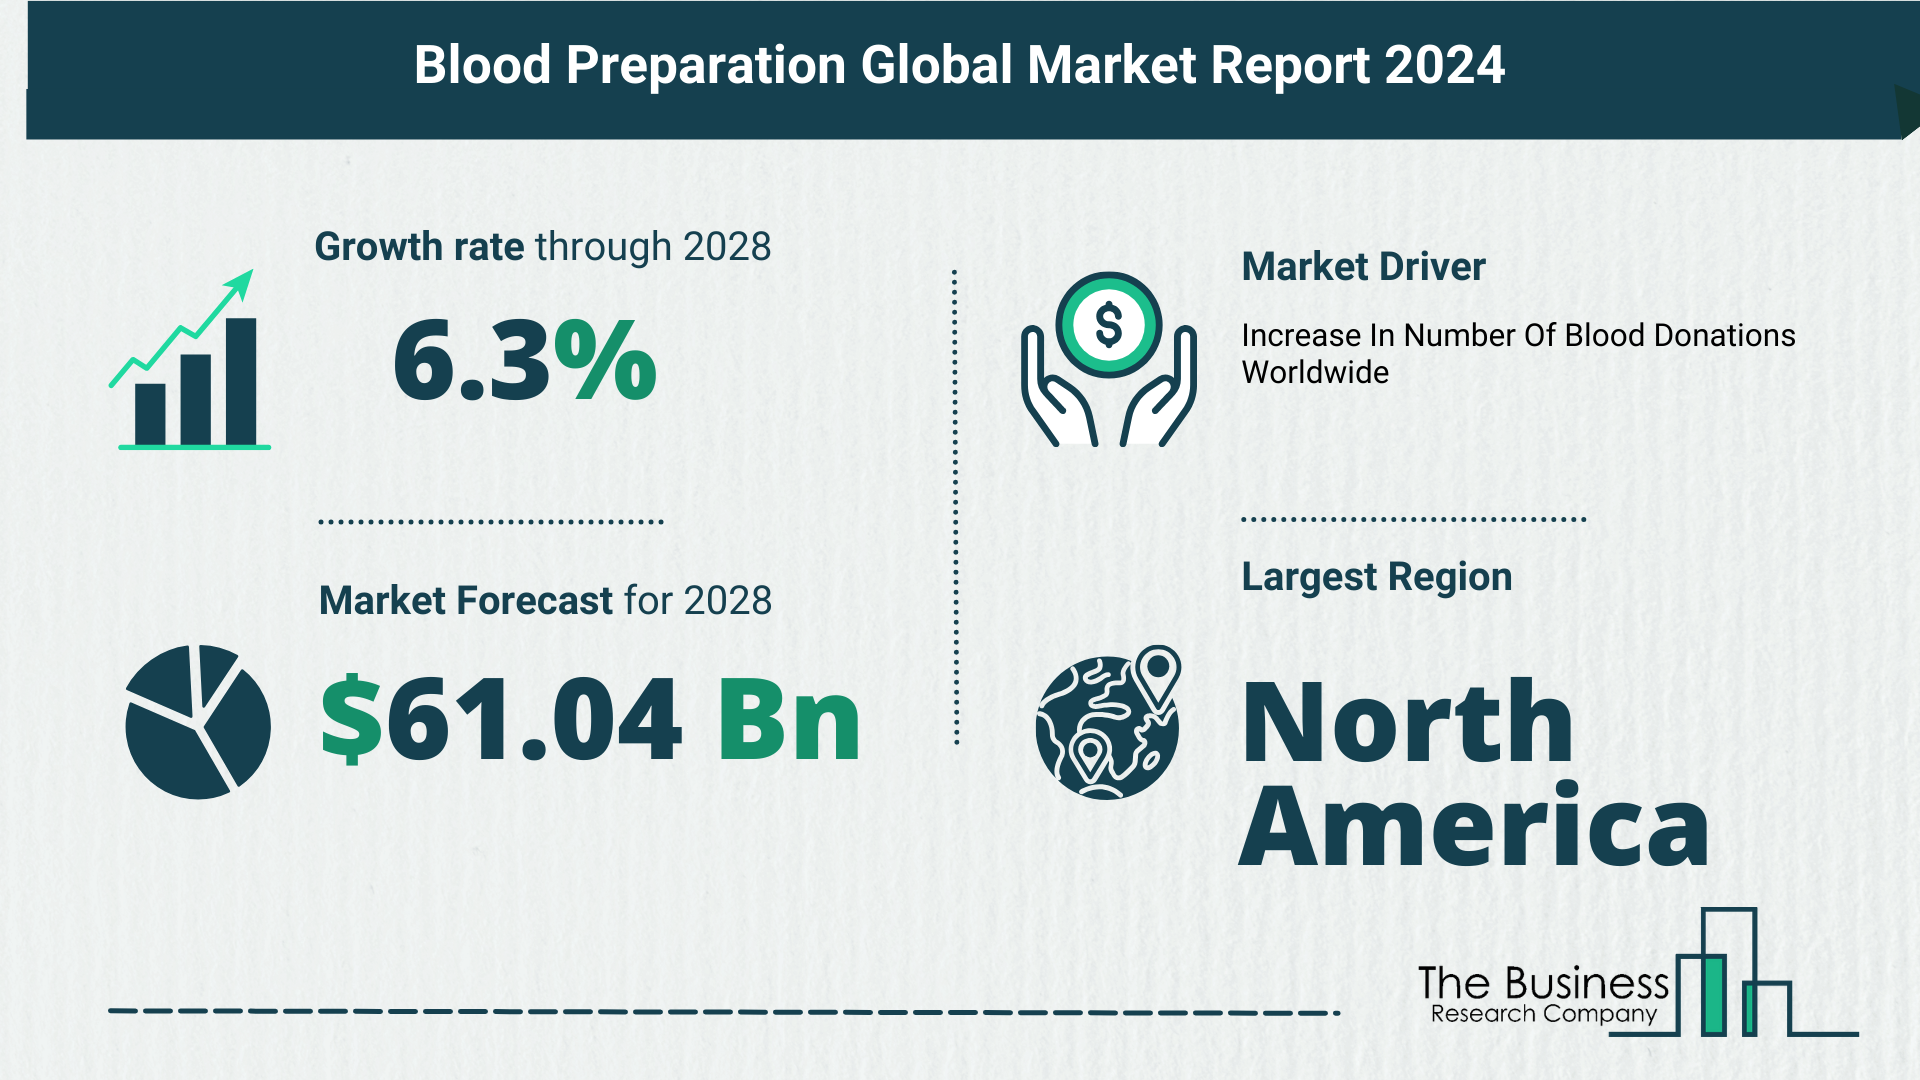 Global Blood Preparation Market